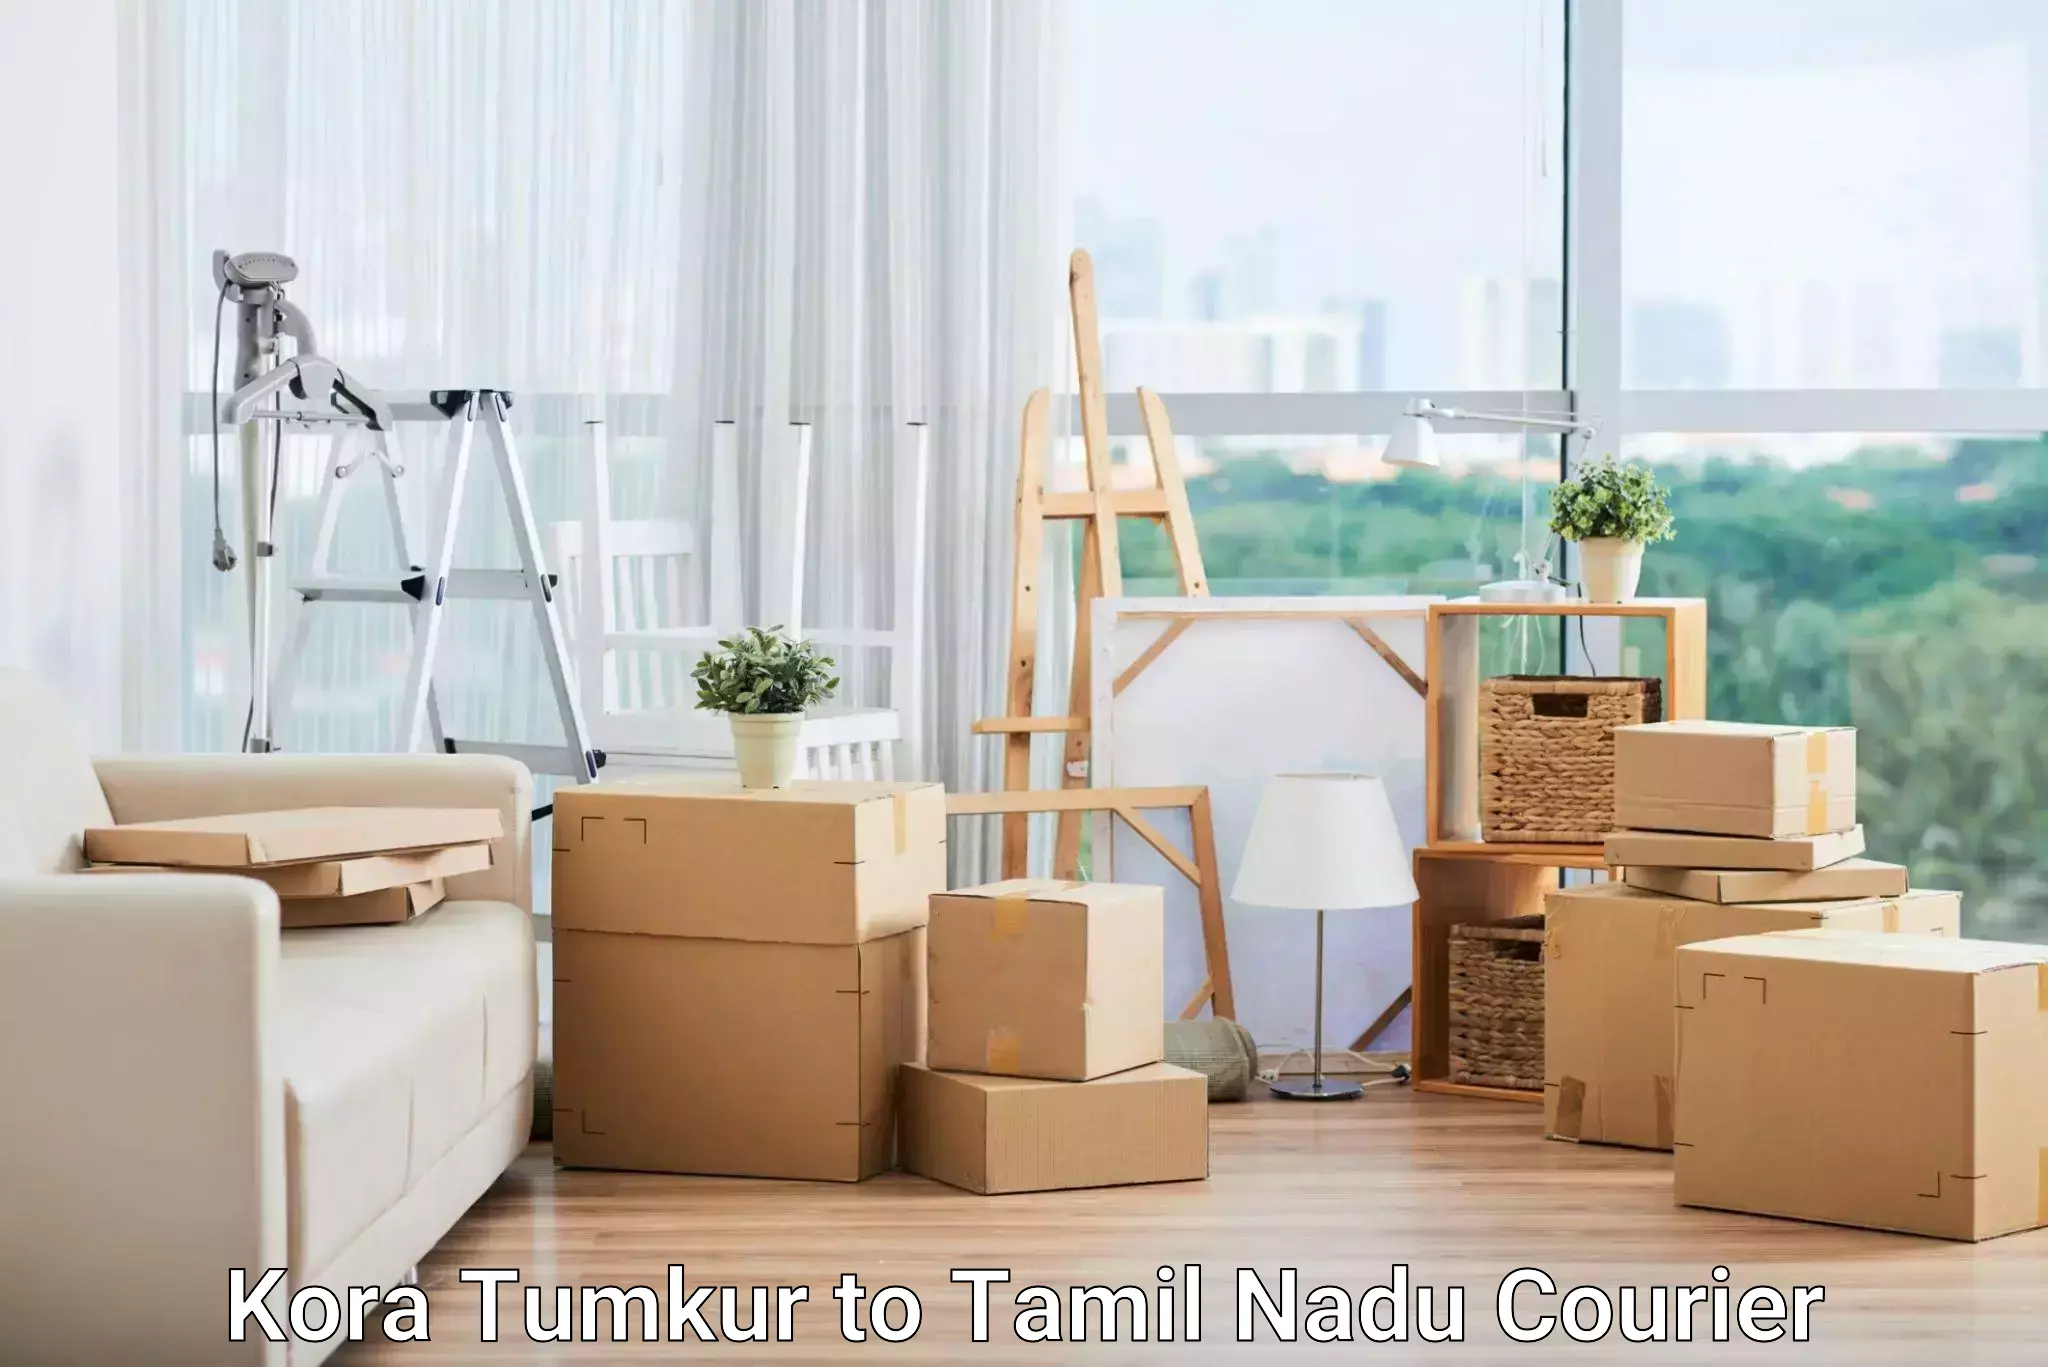 Nationwide shipping capabilities in Kora Tumkur to Tirunelveli